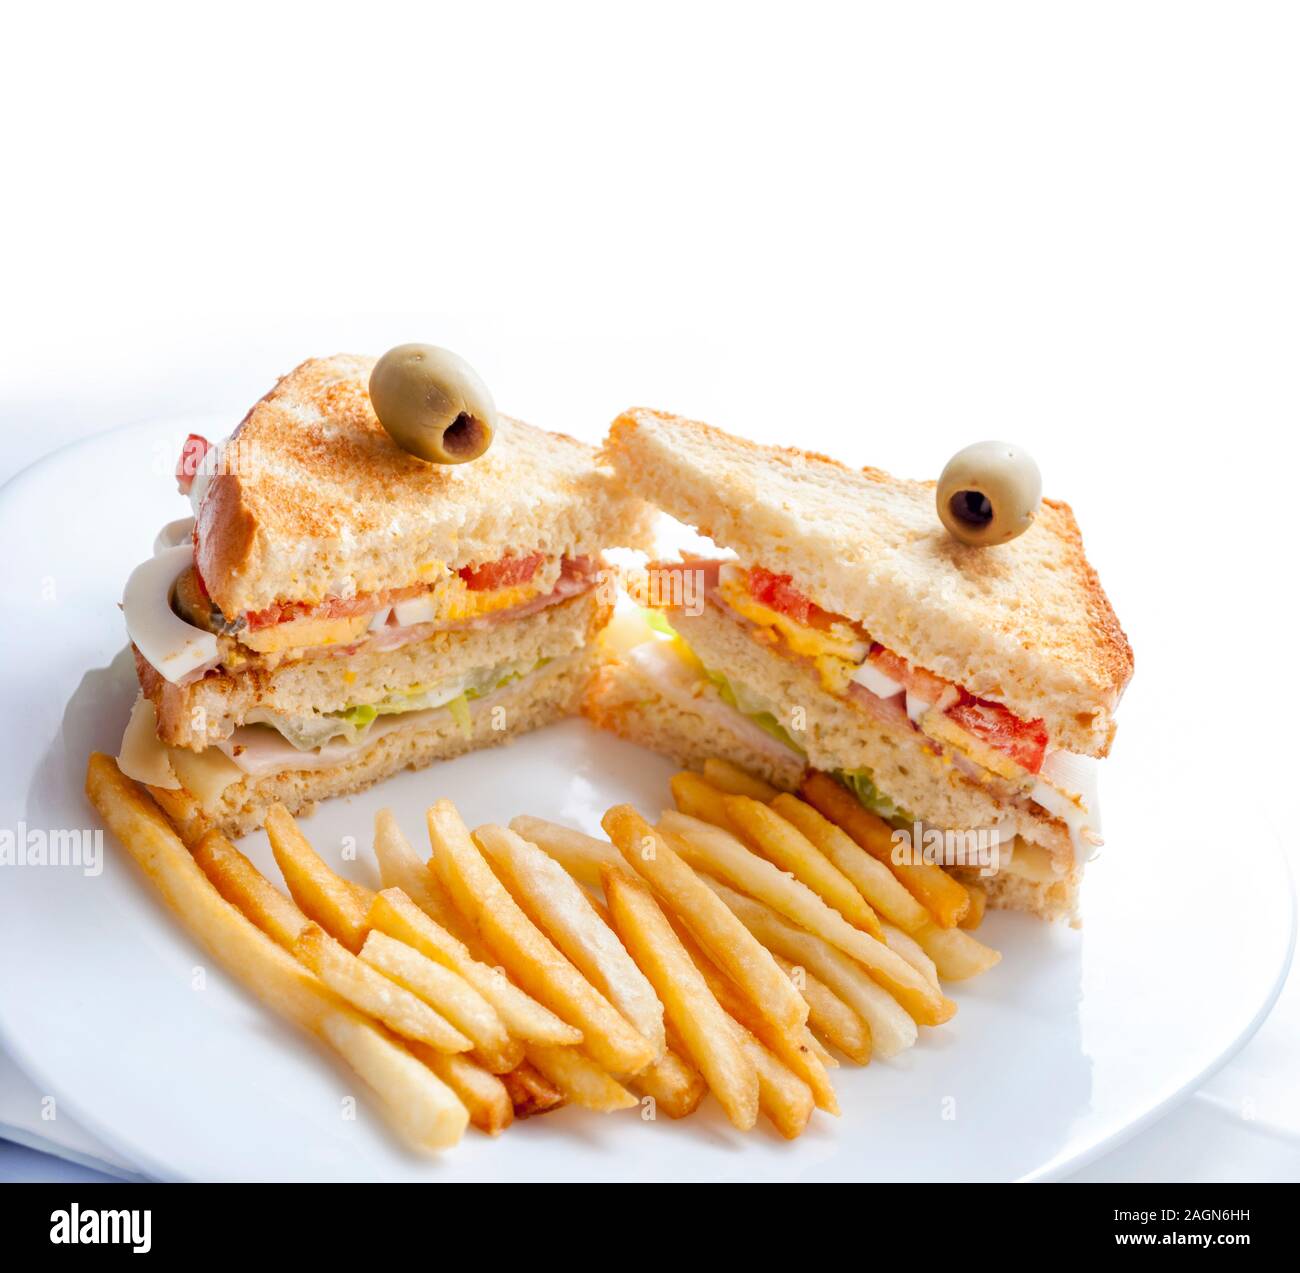 Gros-plan des sandwichs du club avec poulet, œufs, salade, pain grillé et frites servis sur une plaque blanche. Restaurant-snack-déjeuner sain isolé o Banque D'Images